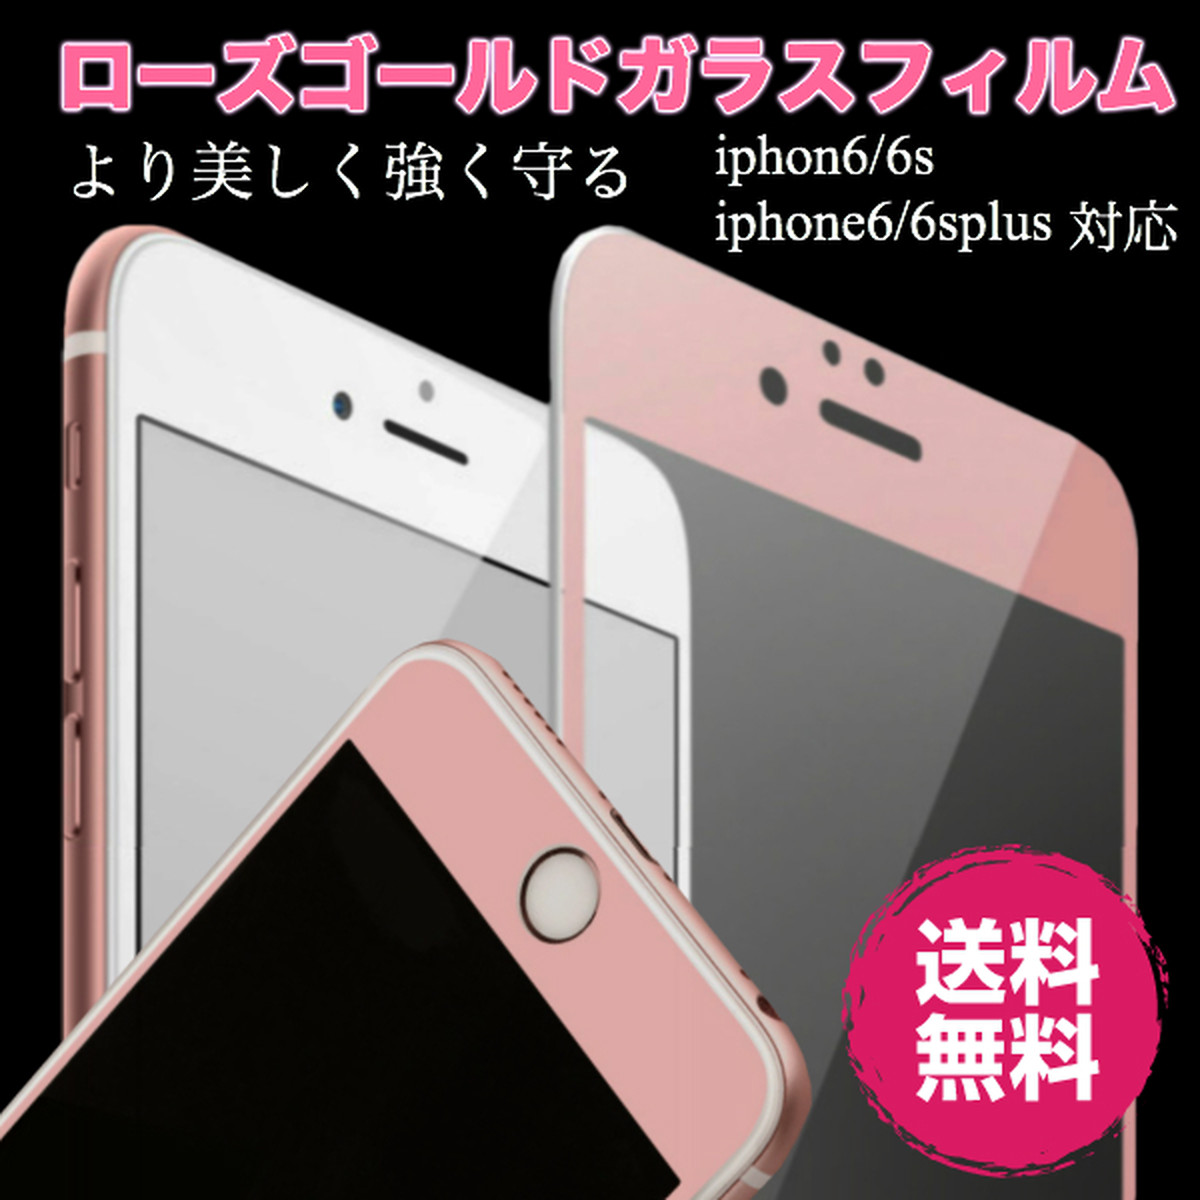 送料無料 強化 保護フィルム ピンク ゴールド 硬度9h Iphone6 6plus Iphone7 7plus 大人向けスマホケースショップ アップルライフ